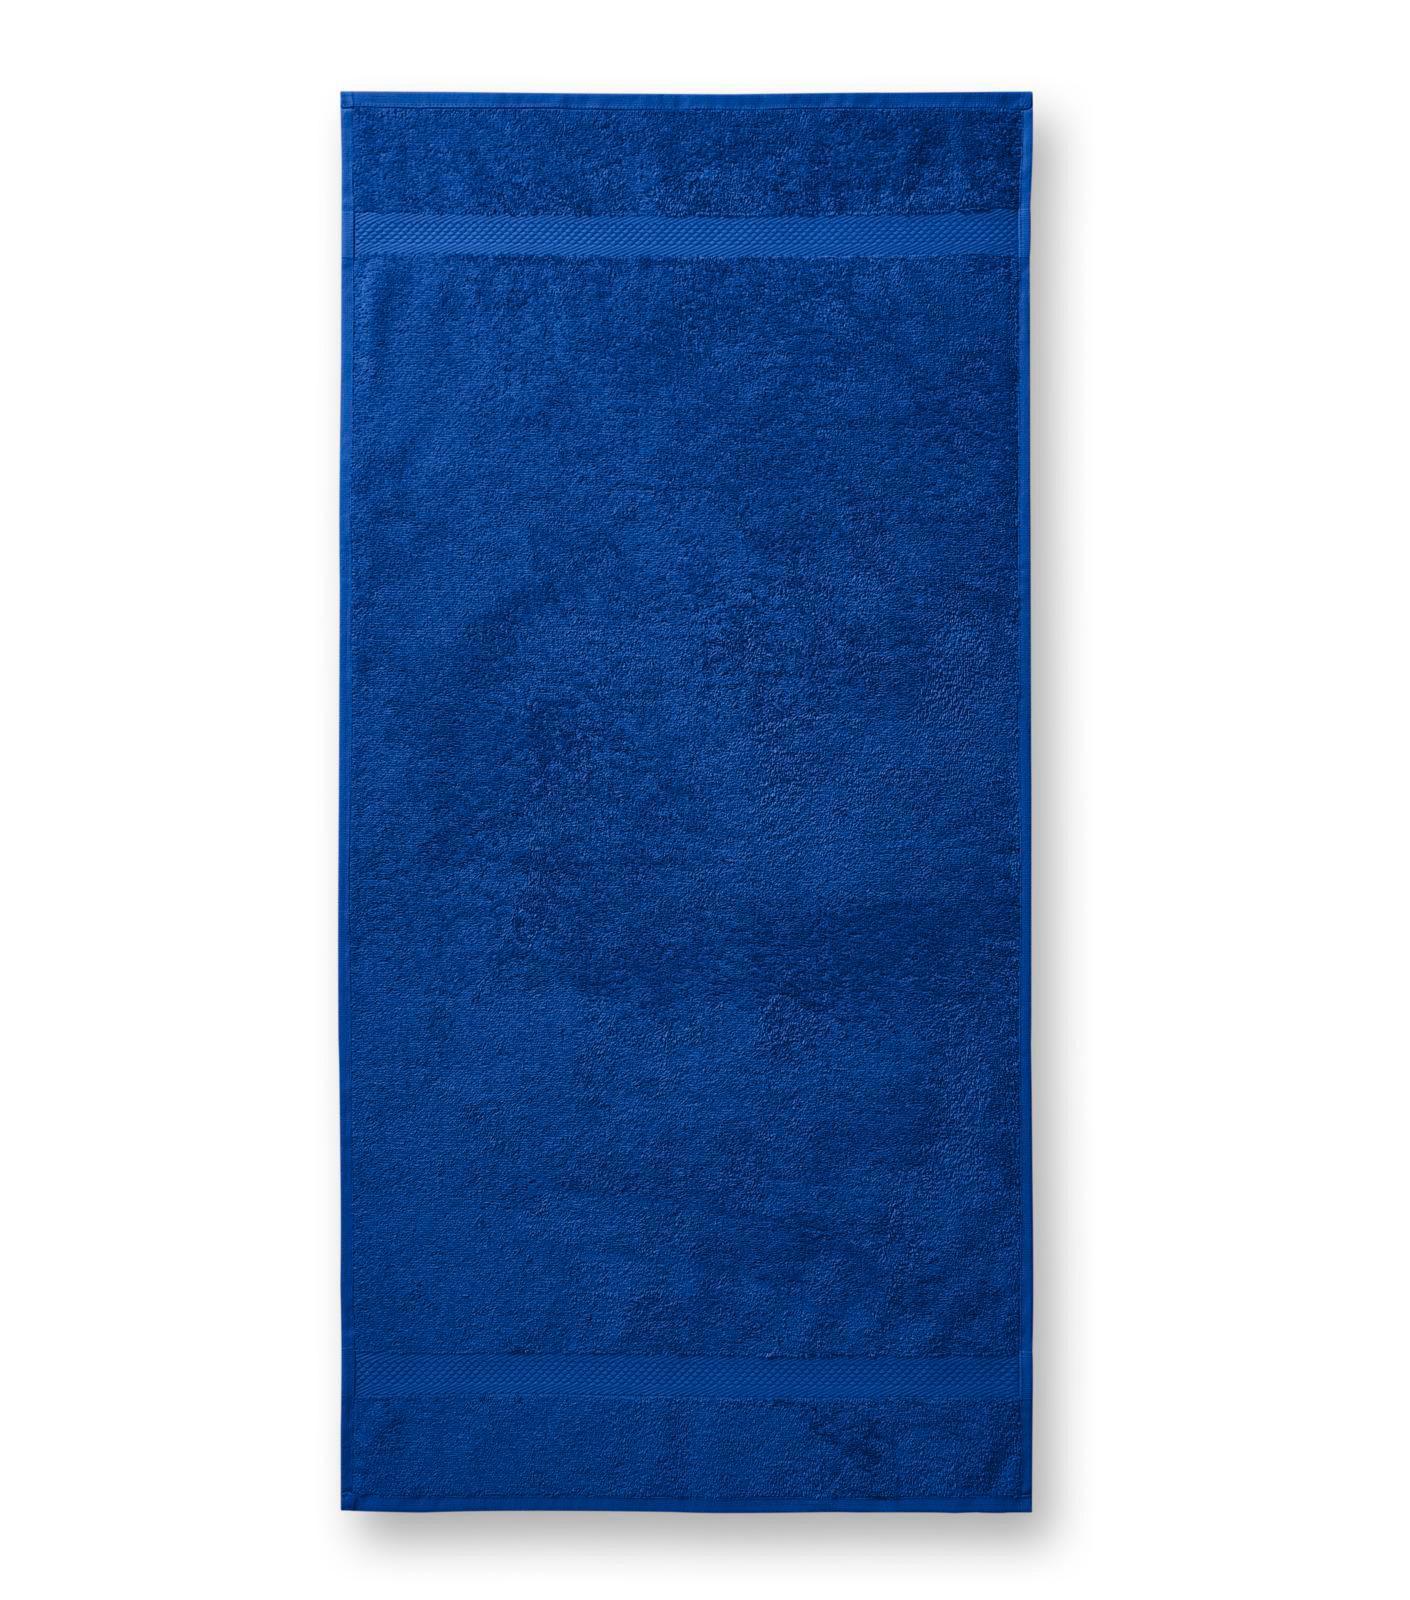 Terija cilpiņu auduma dvielis. Izmēr 50 x 100 cm. Royal blue krāsā ar bodņu abos galos.